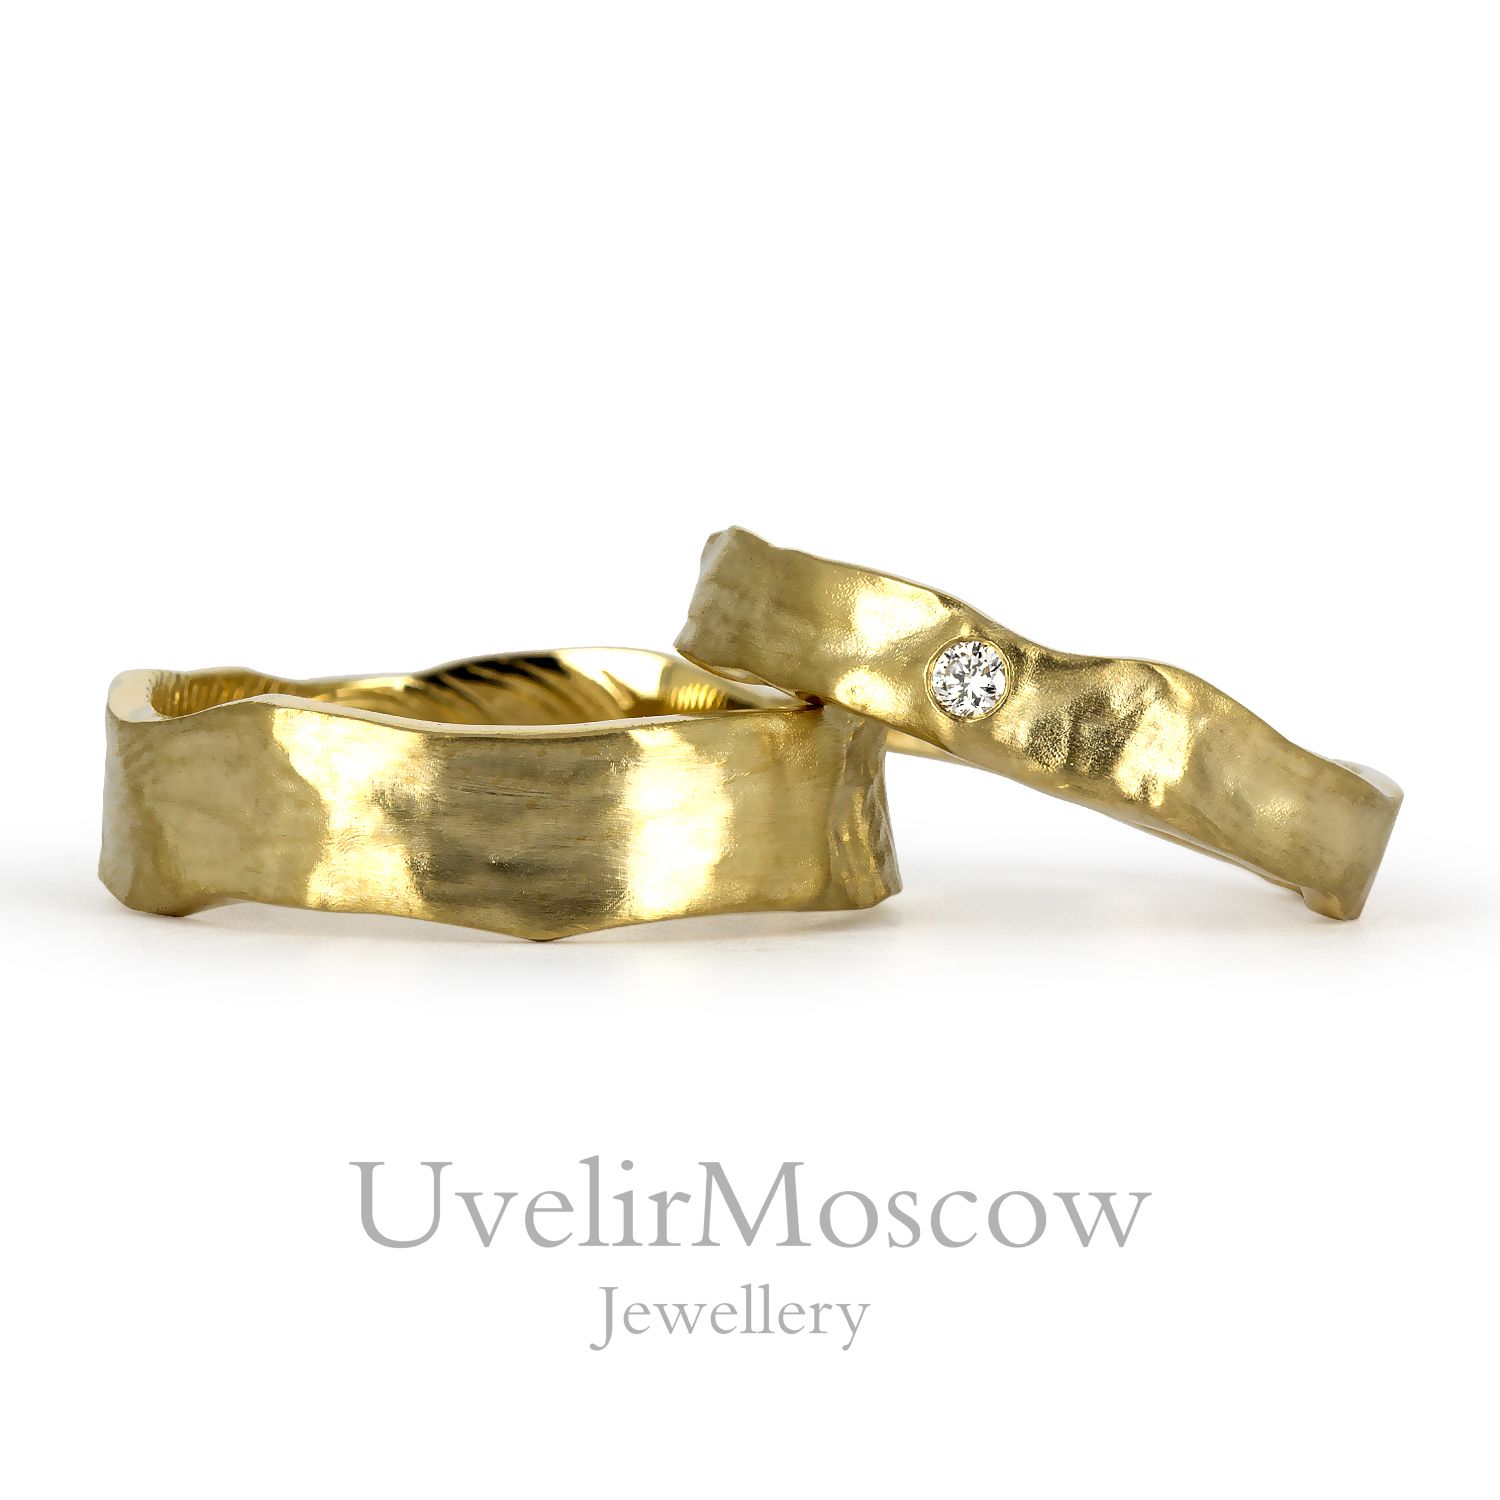 Парные обручальные кольца из желтого золота оригинальной формы